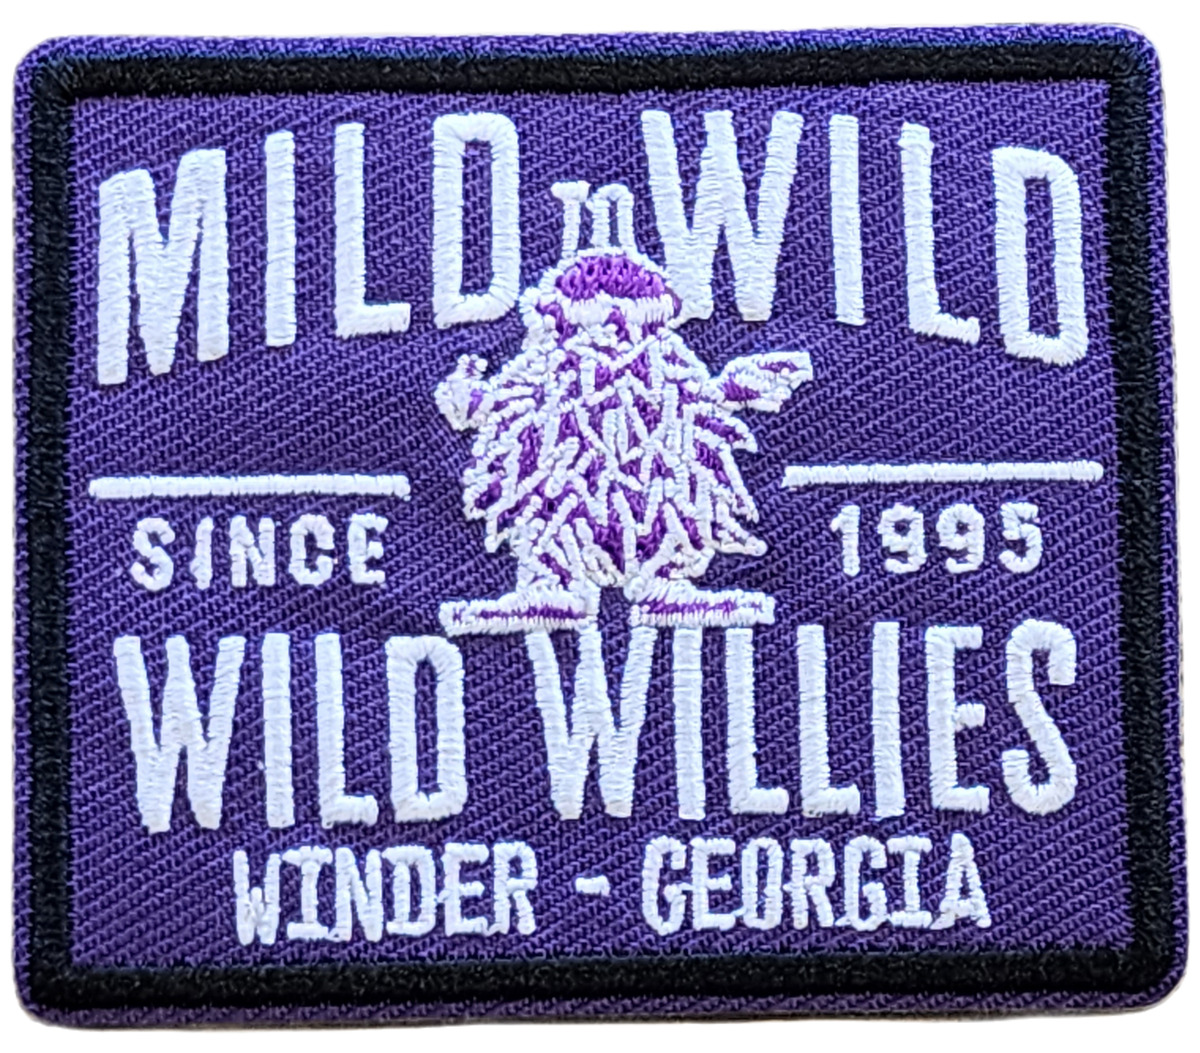 Wild Willies Mild To Wild Purple Patch Series